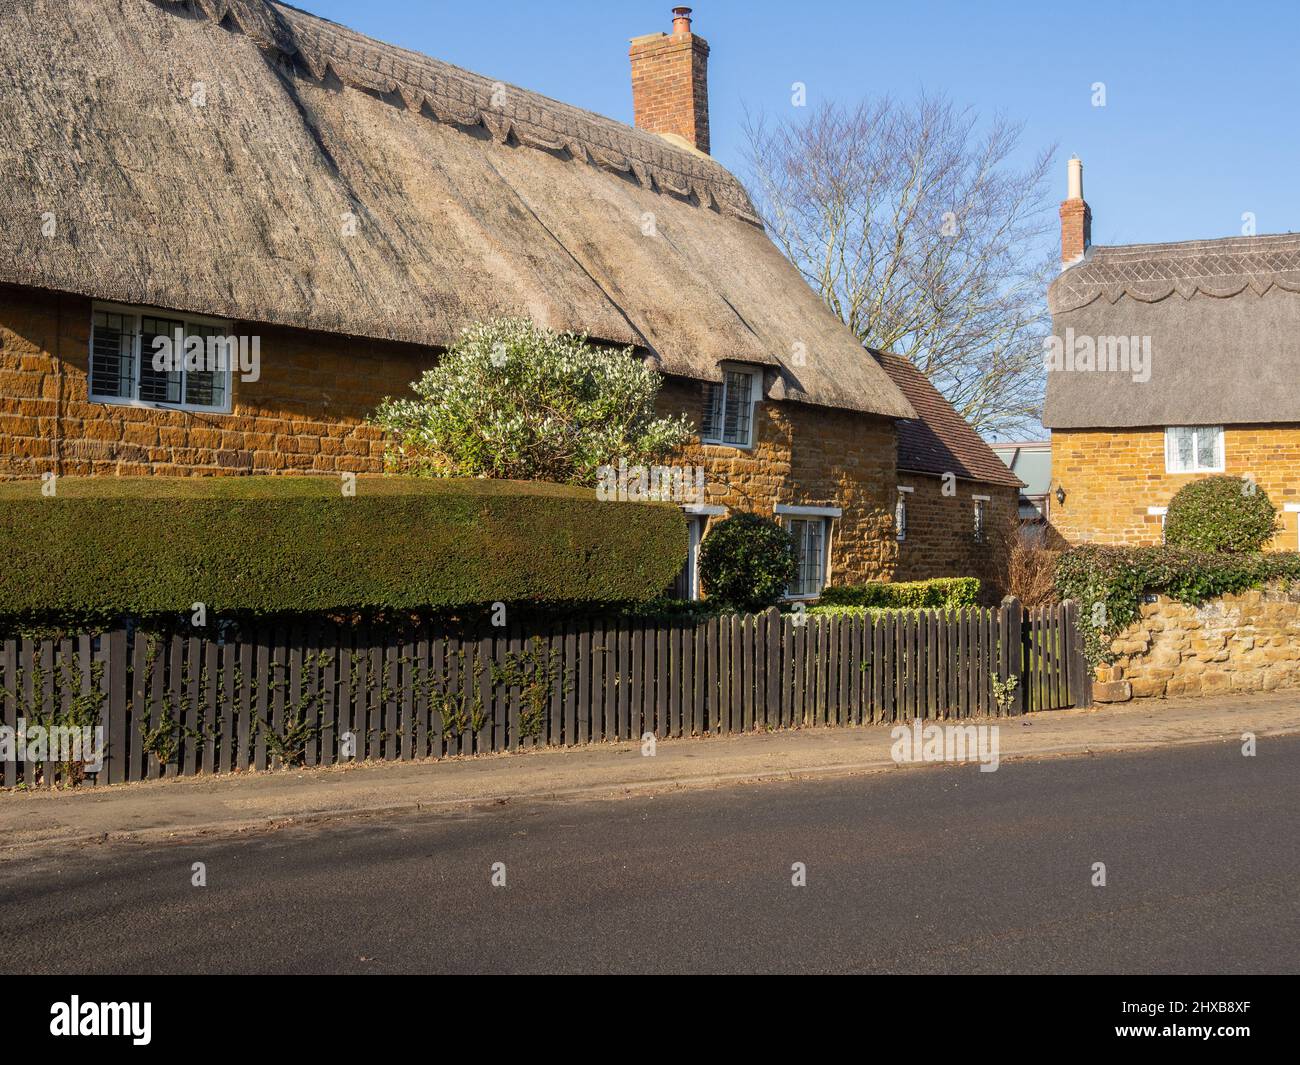 Scena stradale sotto il sole d'inverno, caratterizzata da cottage con tetto in paglia, nel villaggio di Great Brington, Northamptonshire, Regno Unito Foto Stock